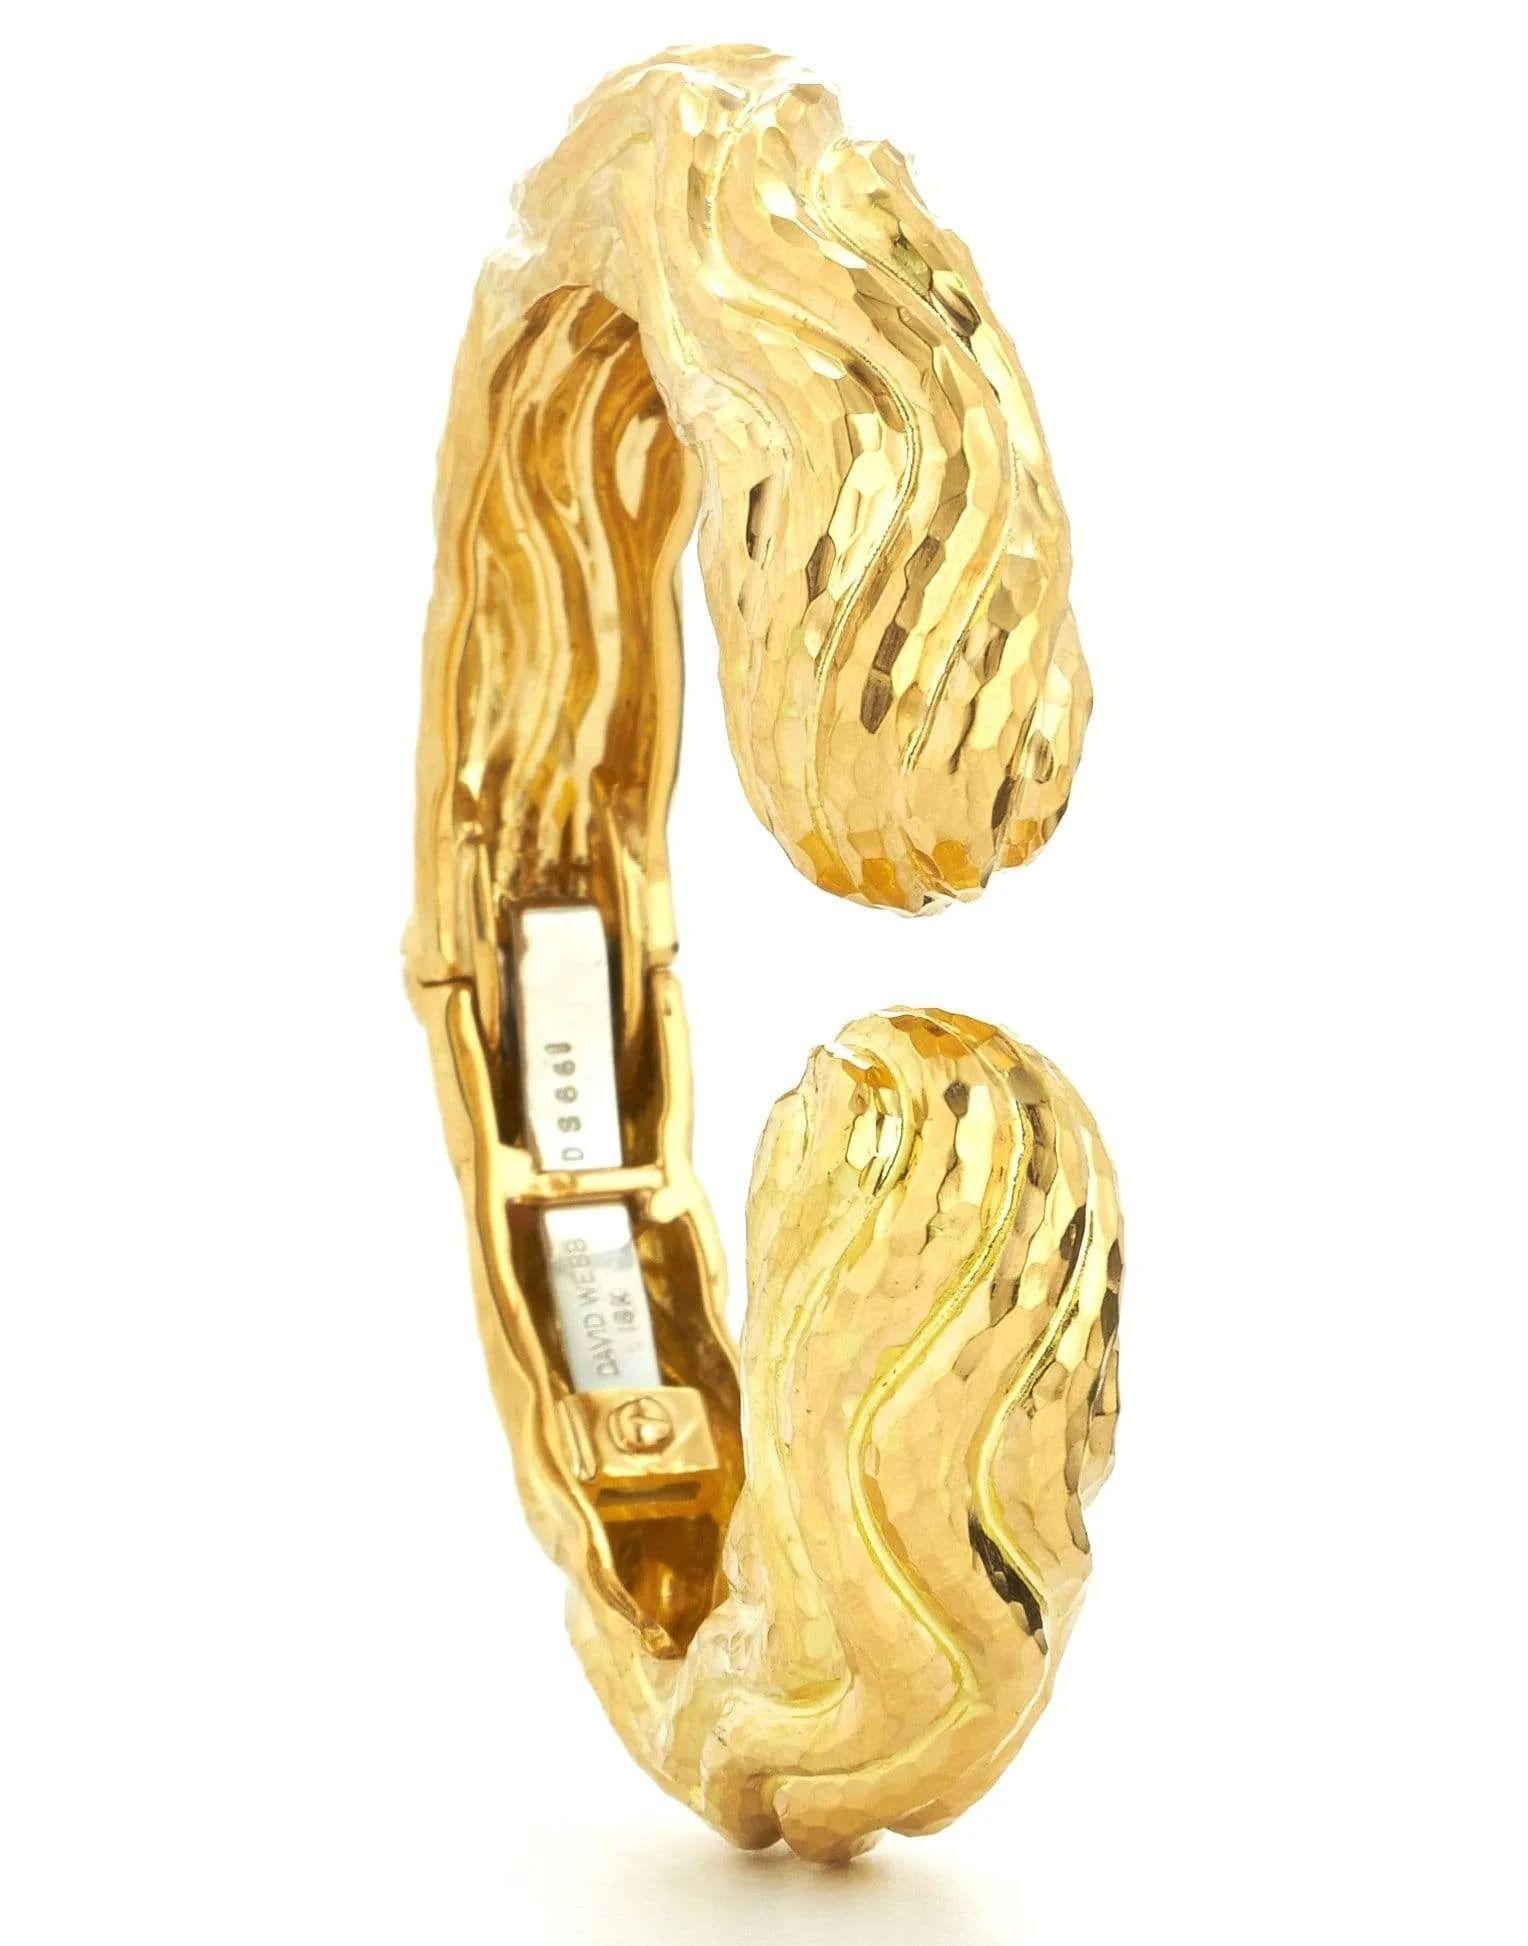 Le bracelet Wave Cuff en platine et or jaune 18 carats de David Webb est un bijou époustouflant qui met en valeur le style emblématique de la marque et son savoir-faire exceptionnel. Confectionné en or jaune 18 carats, ce bracelet manchette présente